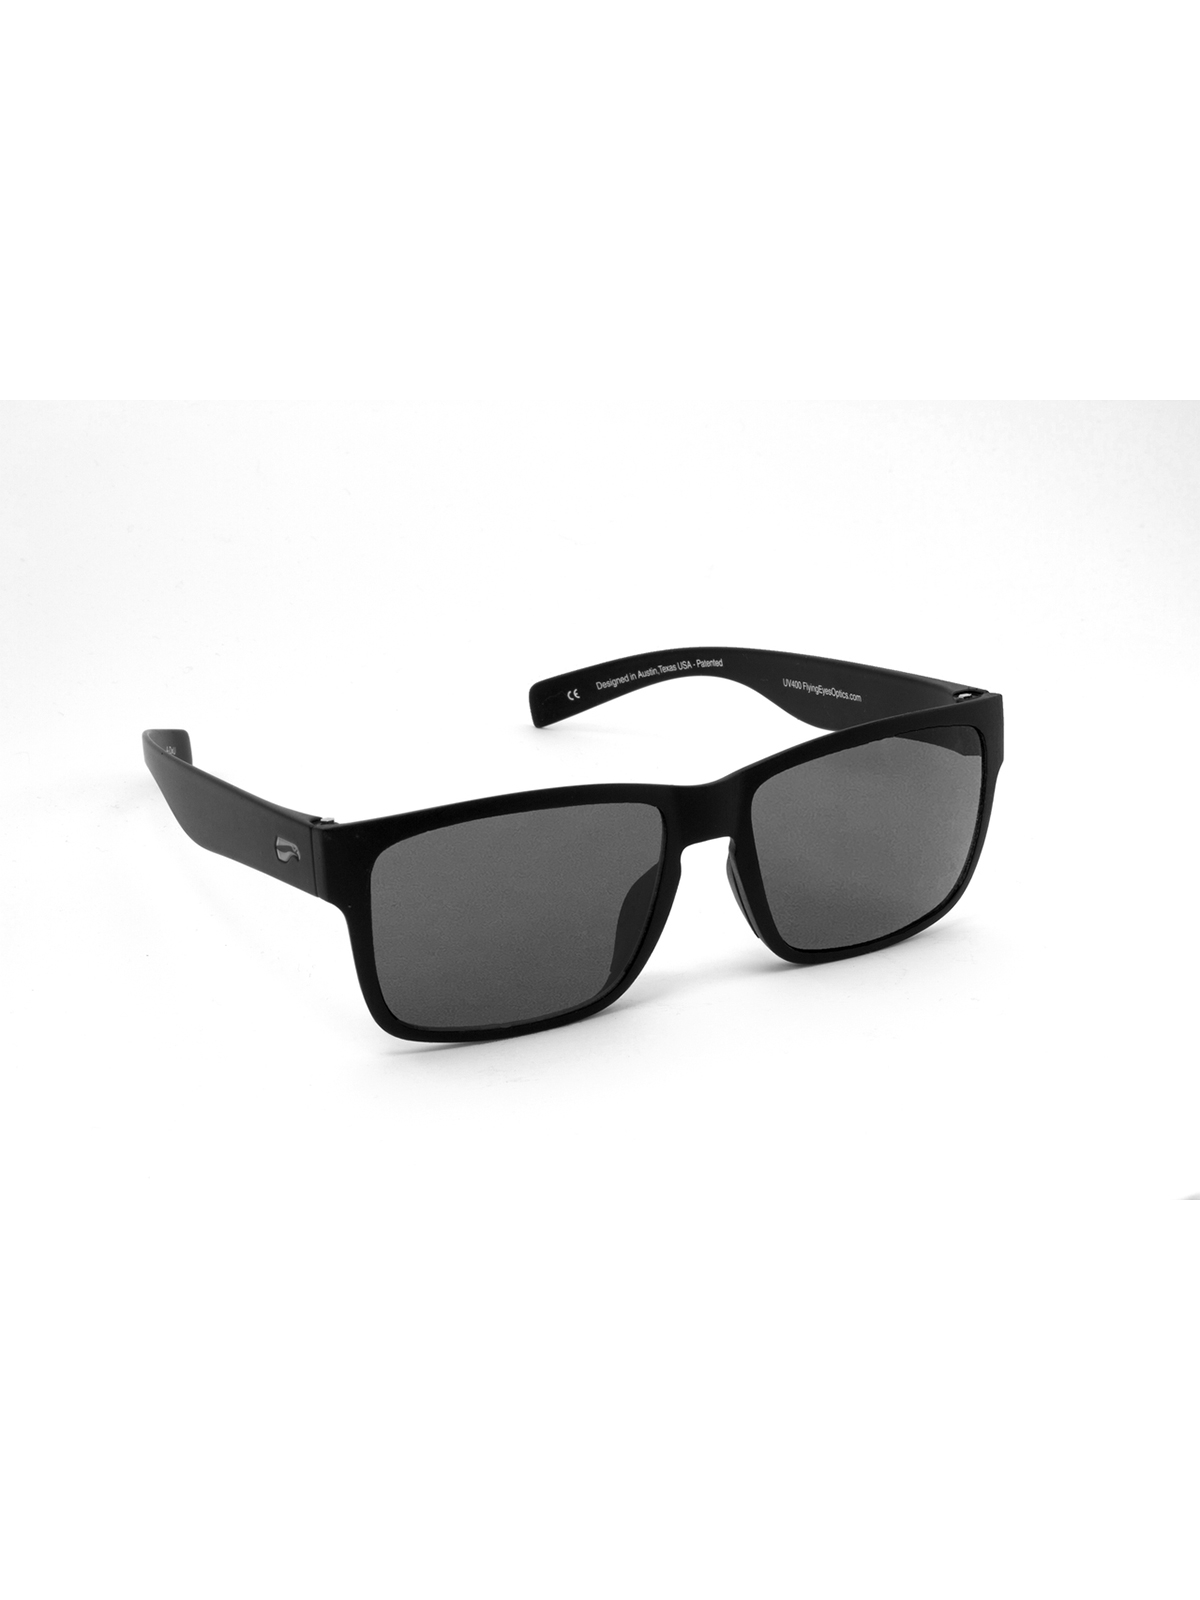 Flying Eyes Sonnenbrille Osprey - Rahmen matt schwarz, Linsen grau